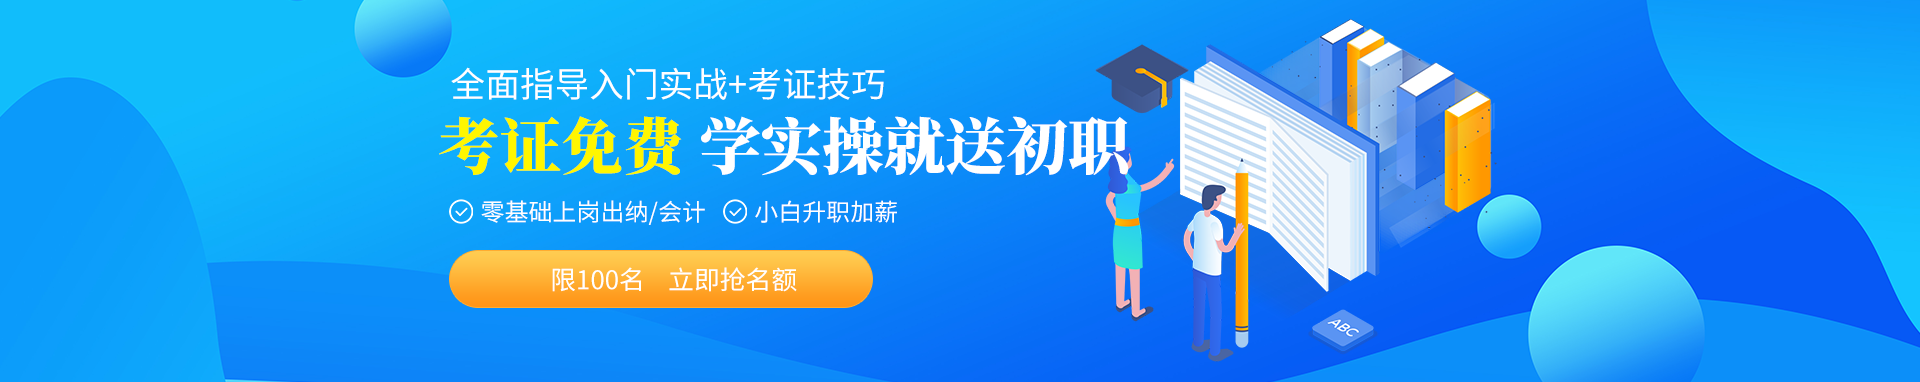 萍乡仁和会计培训学校 横幅广告